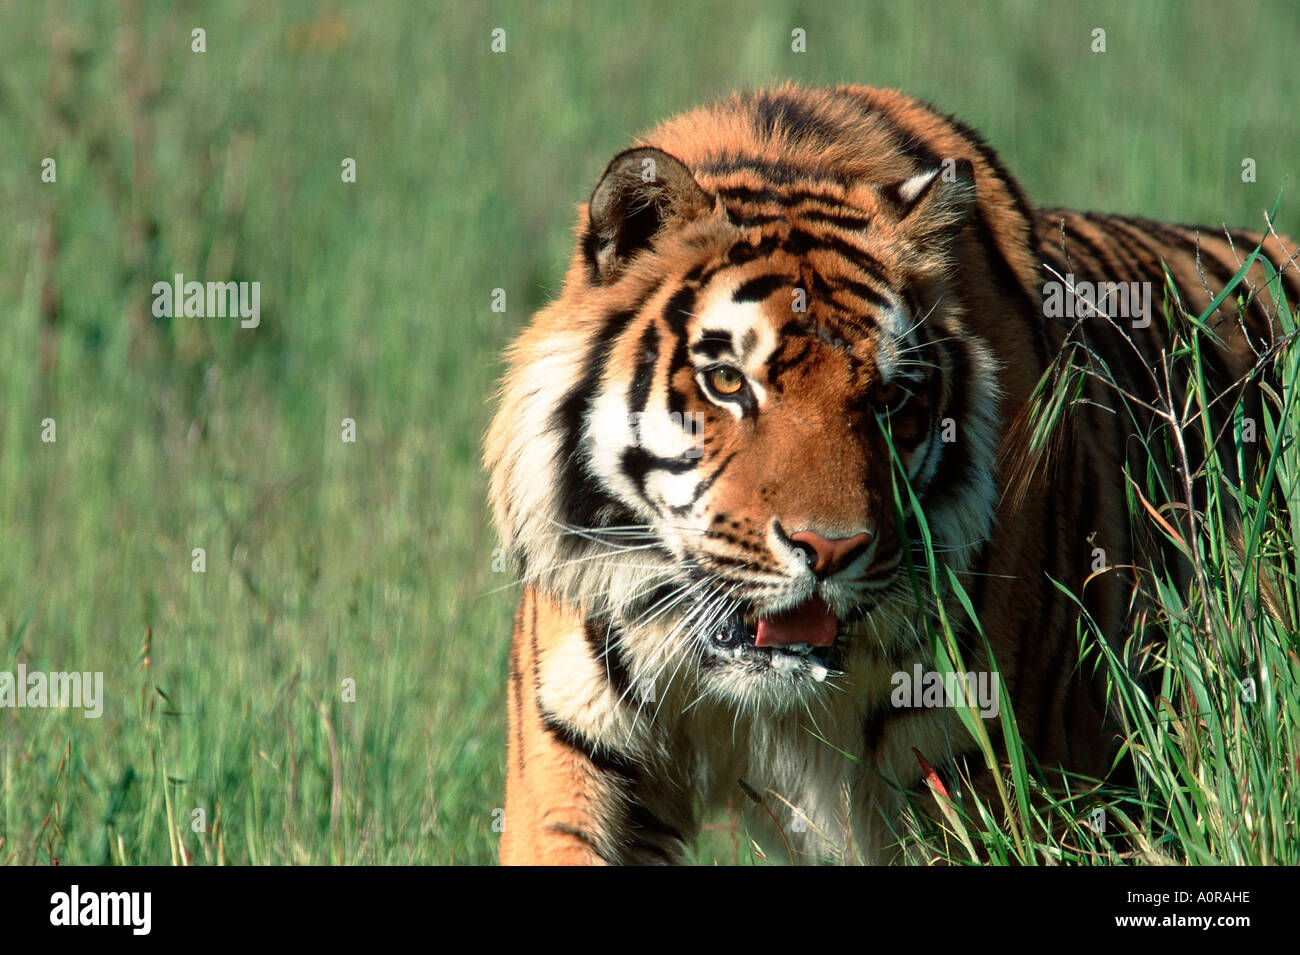 Bengal Tiger / Indischer Tiger / Koenigstiger Stock Photo